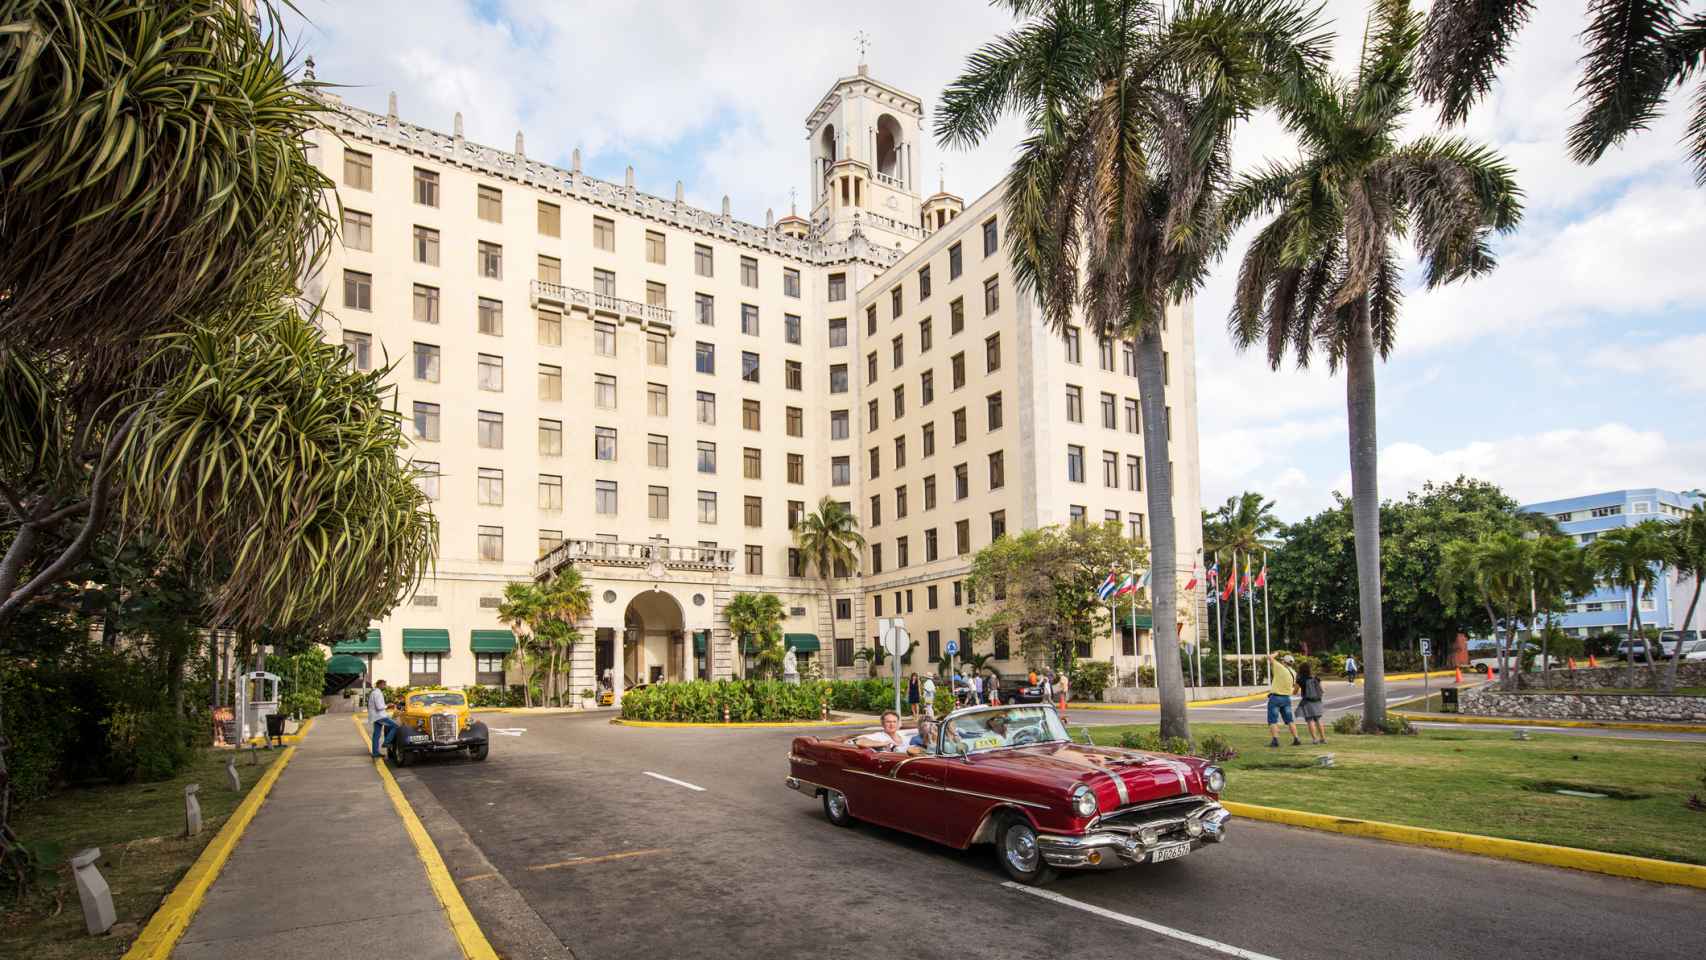 Hotel Nacional de Cuba (La Habana).